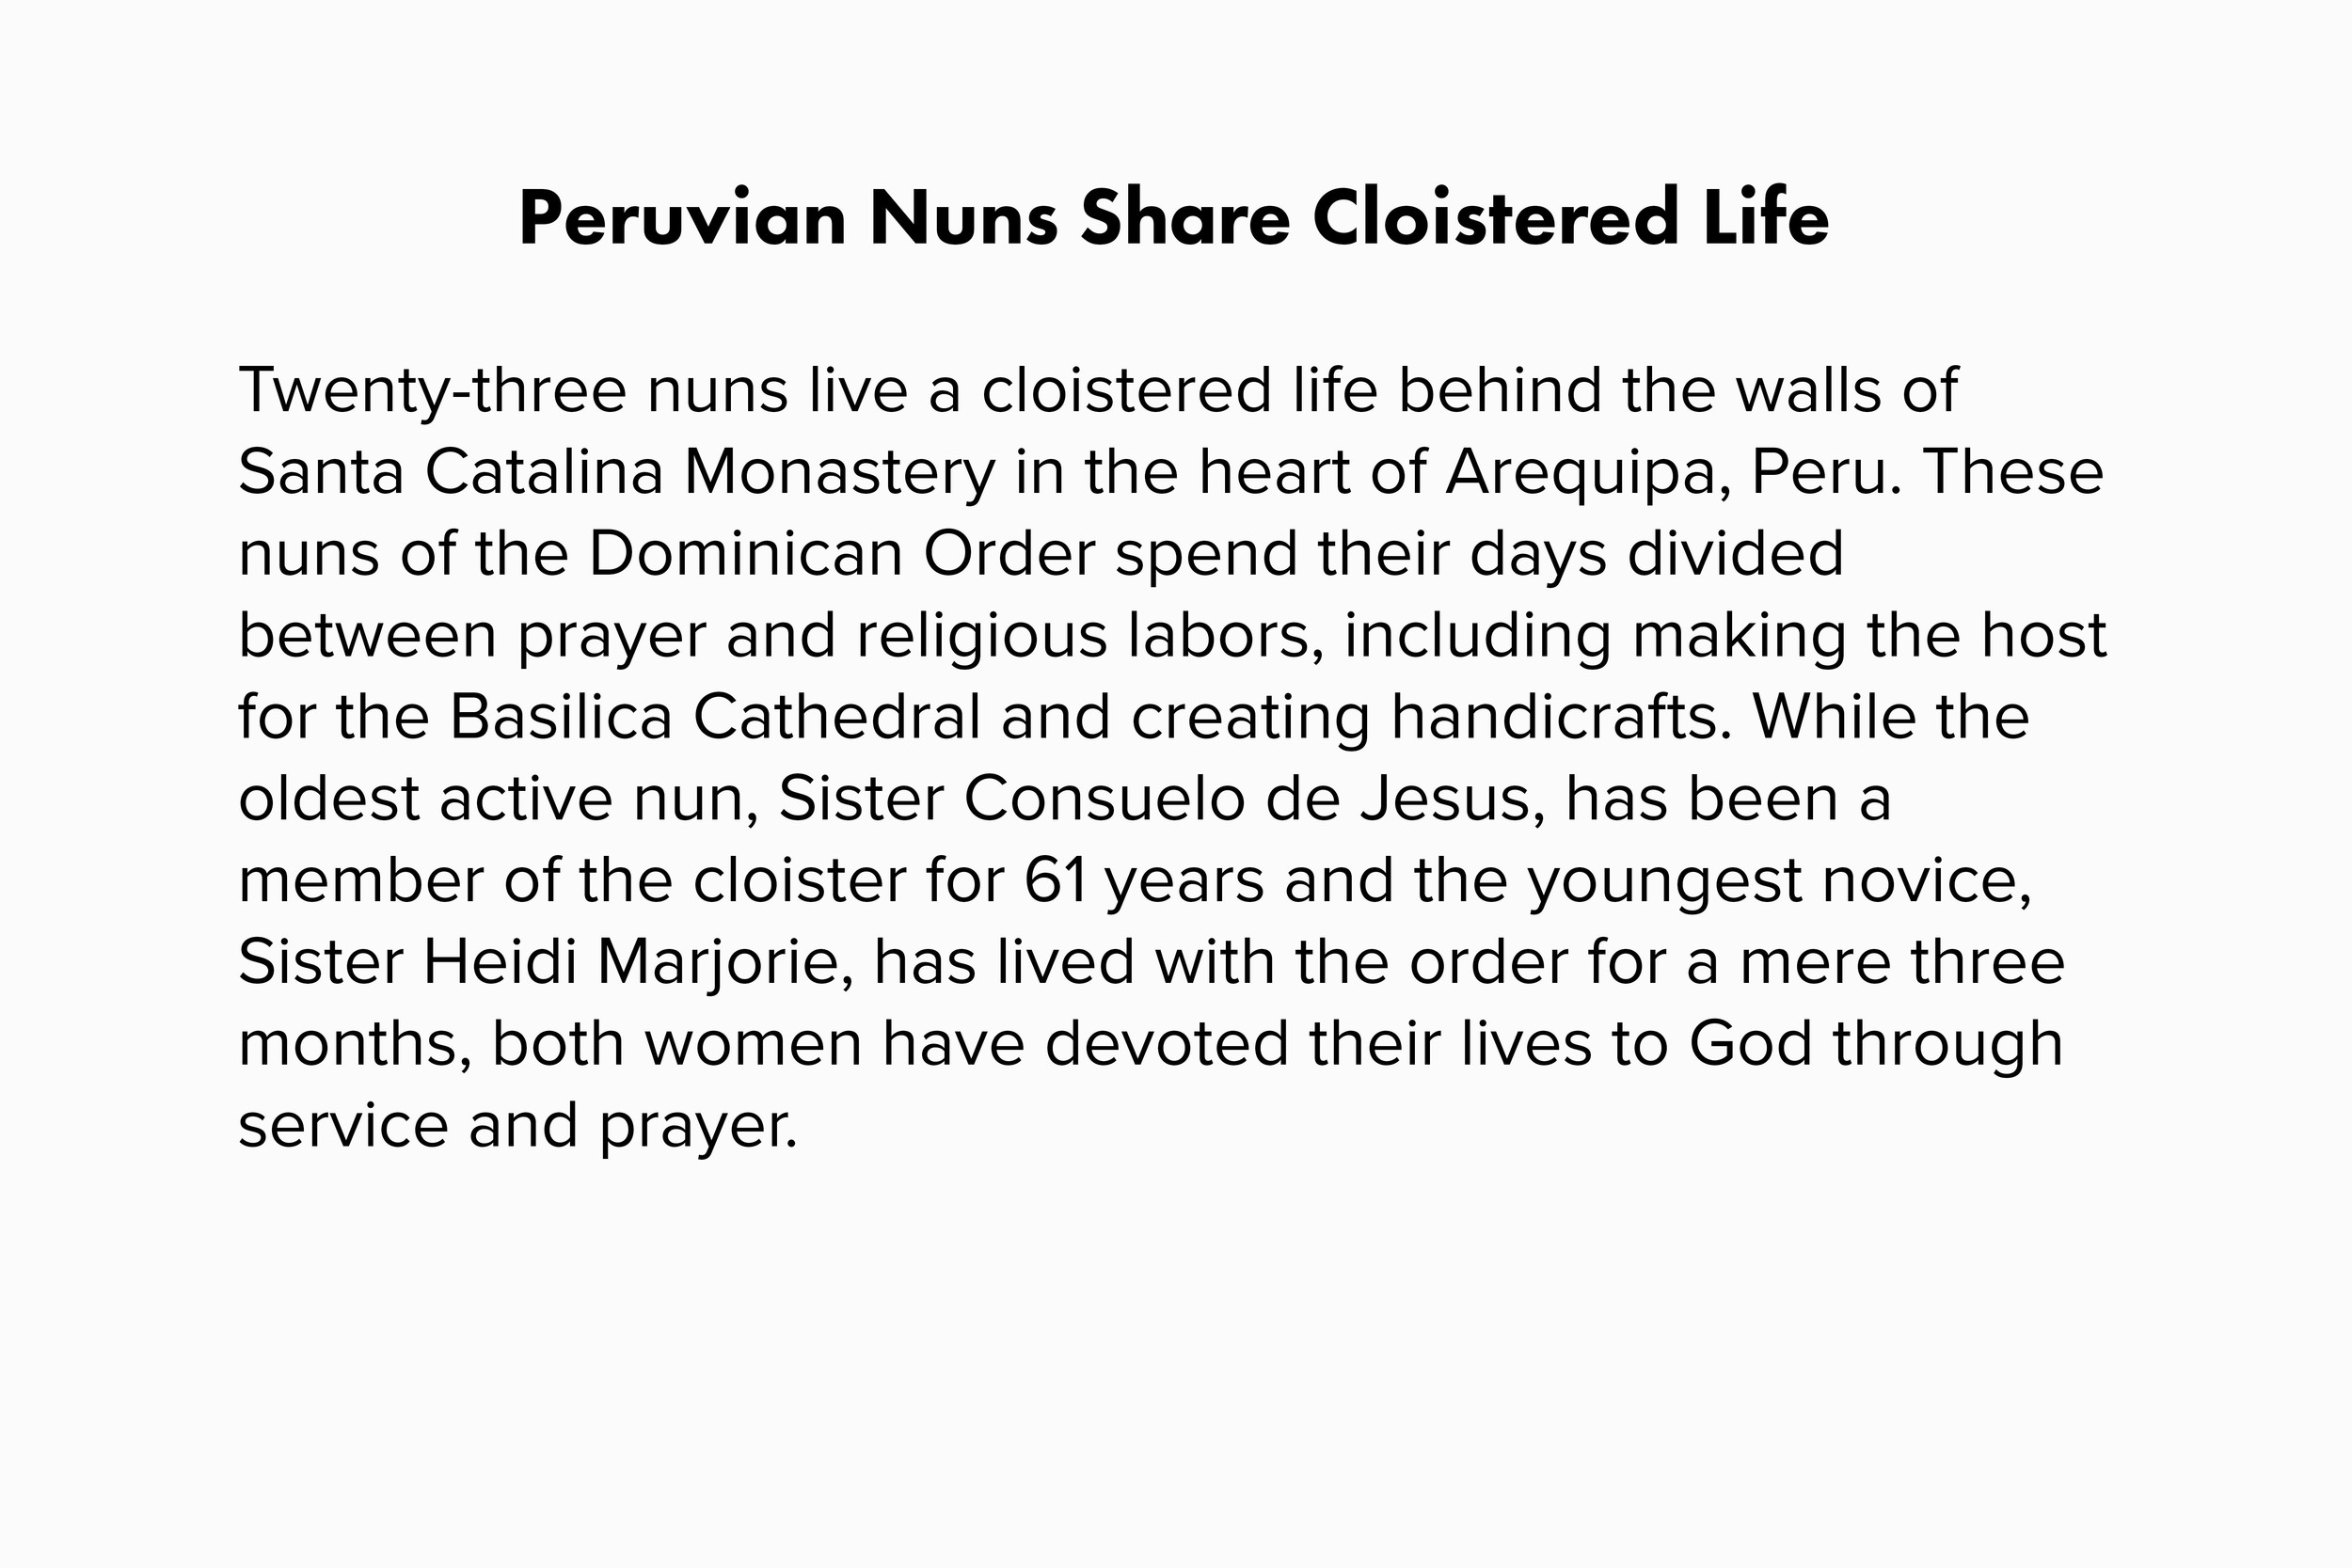 Nuns-description.jpg